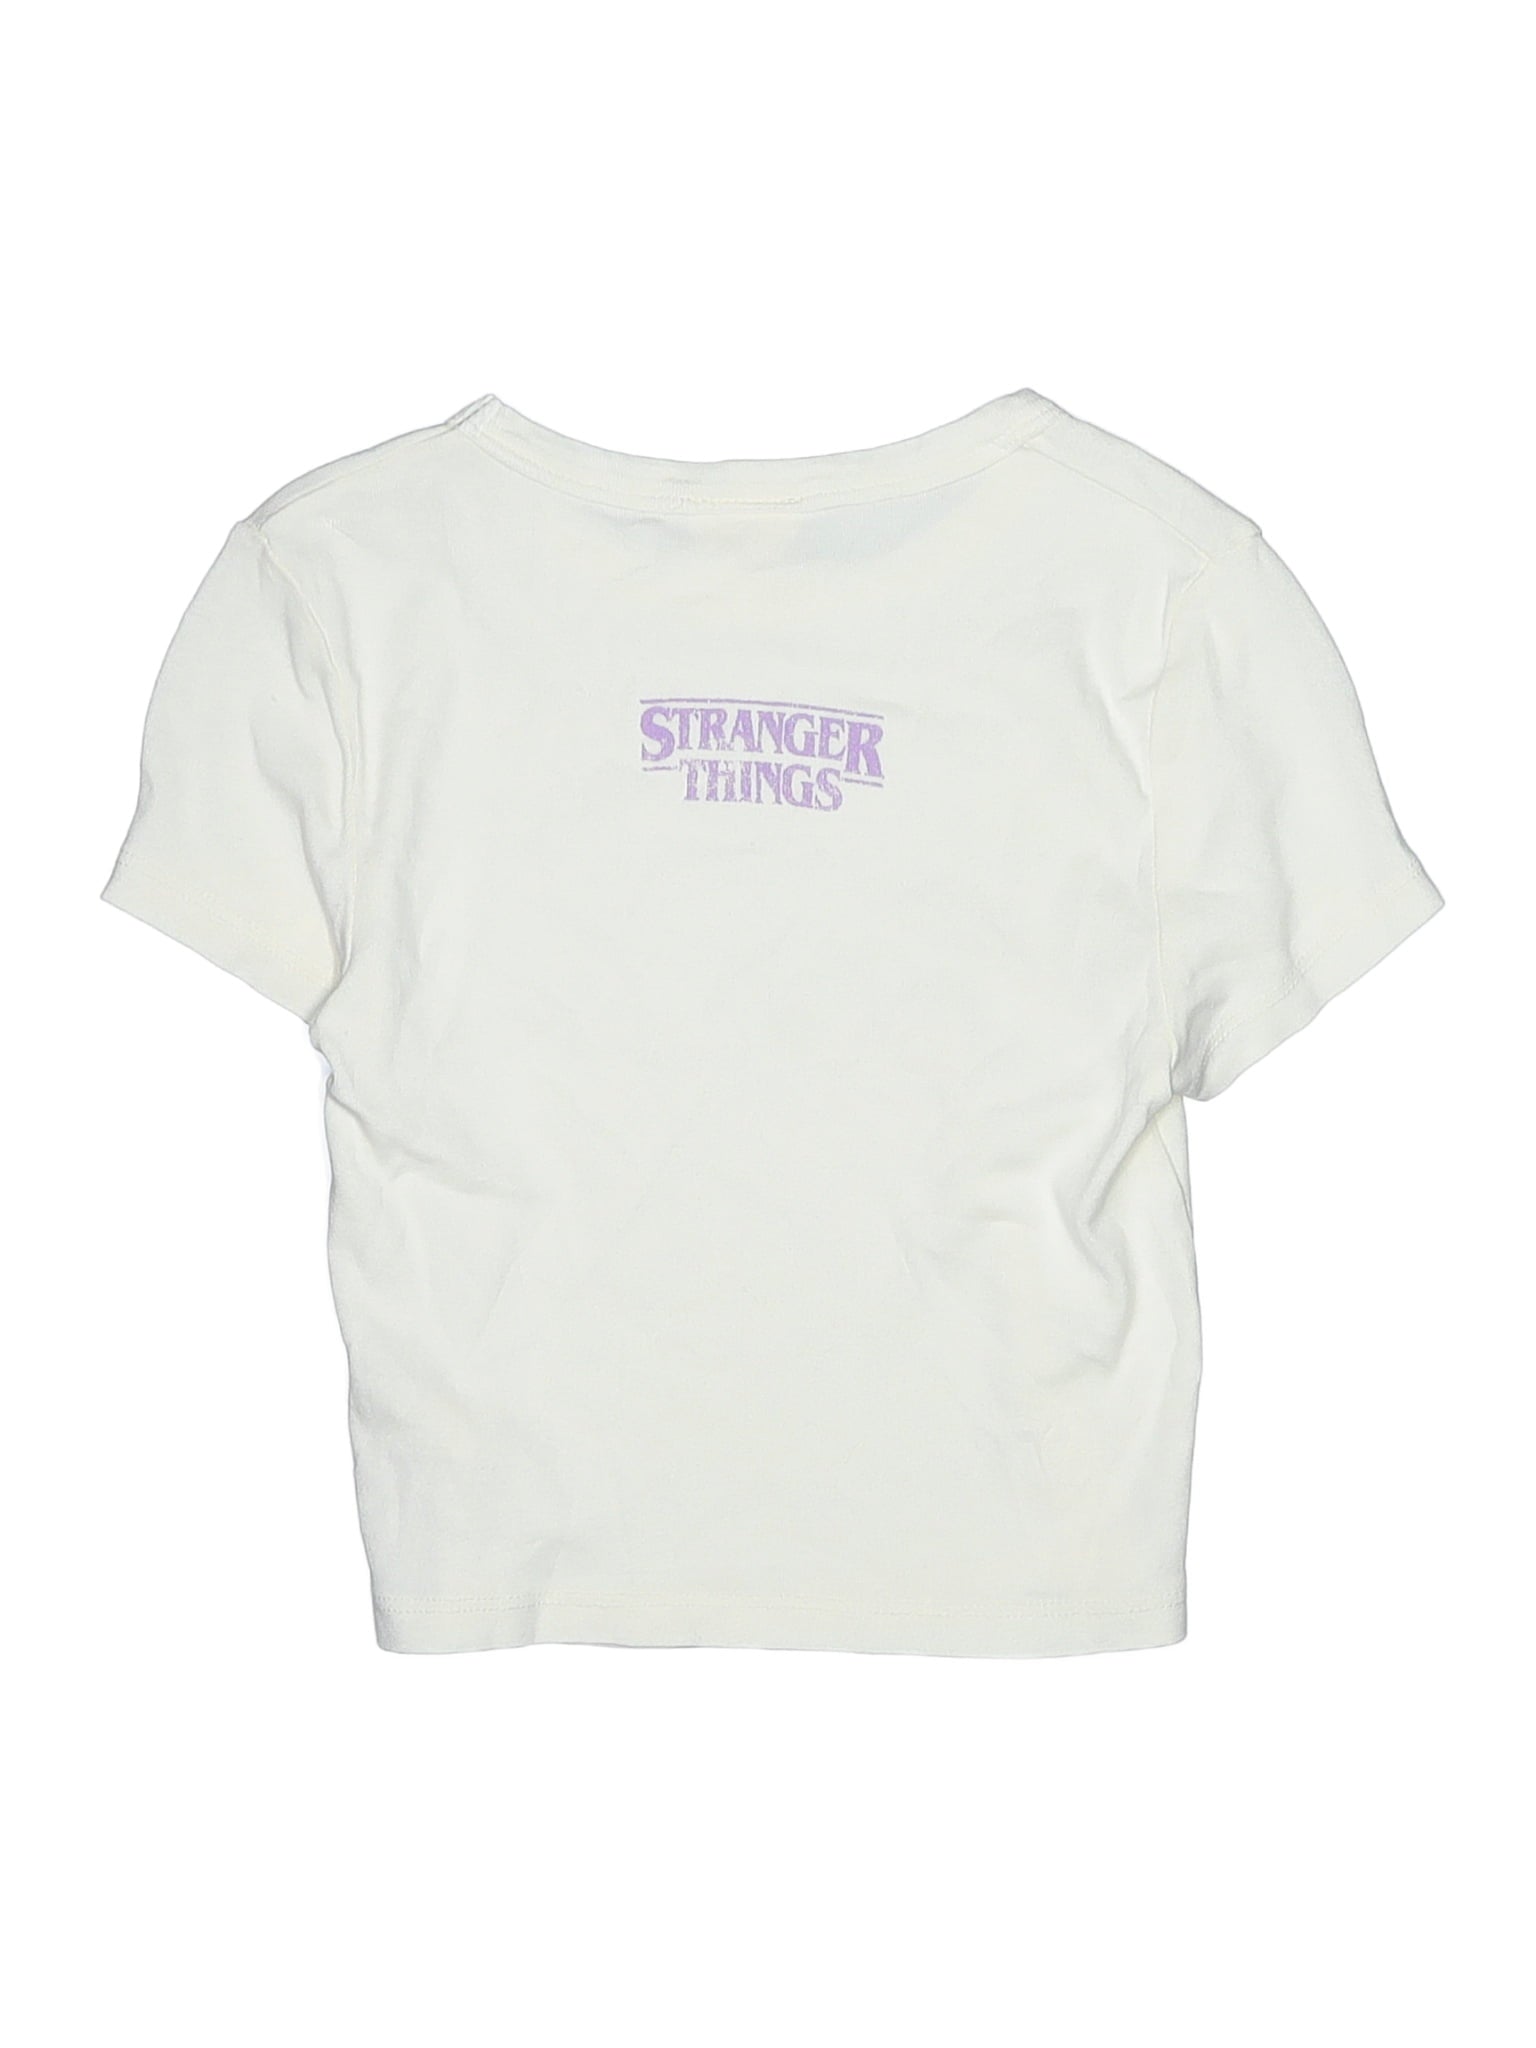 Short Sleeve T Shirt size - S (Kids)